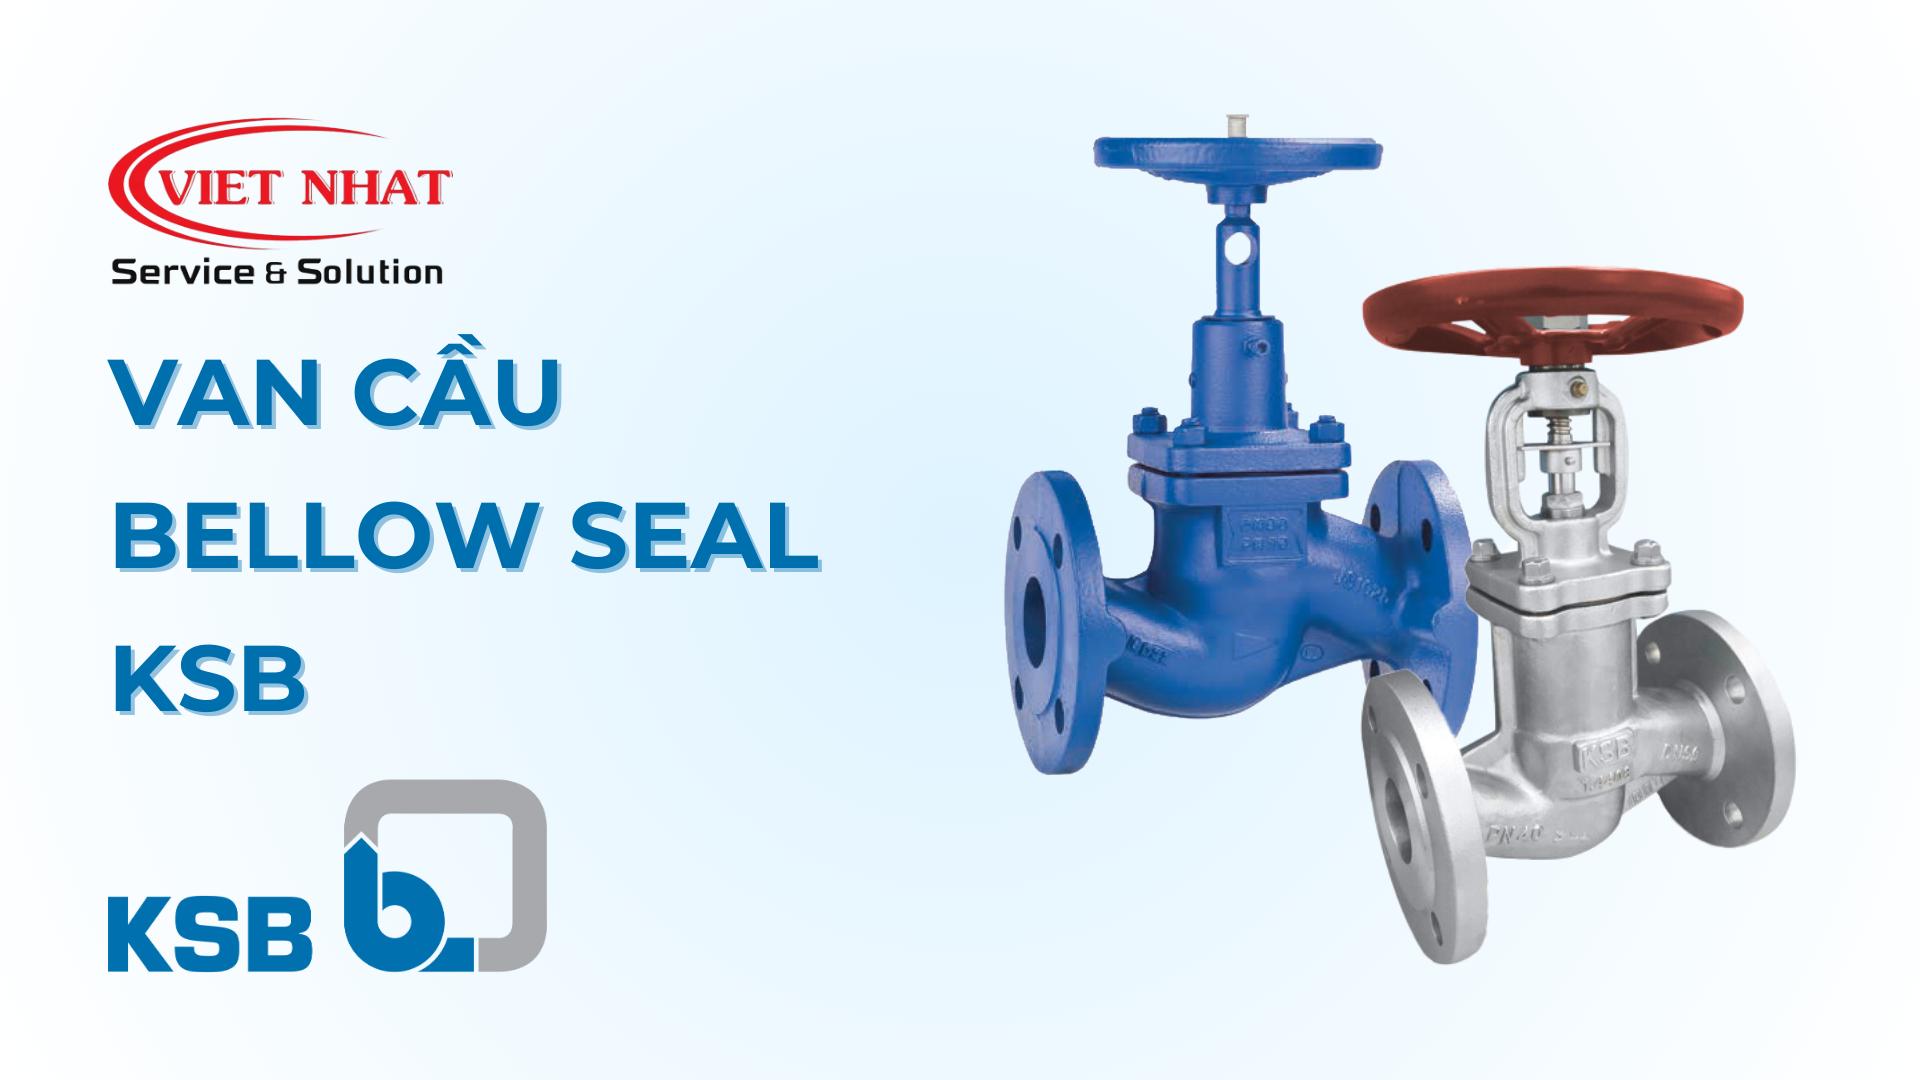 Van cầu bellow seal KSB: Một giải pháp đáng tin cậy cho hệ thống đường ống công nghiệp.